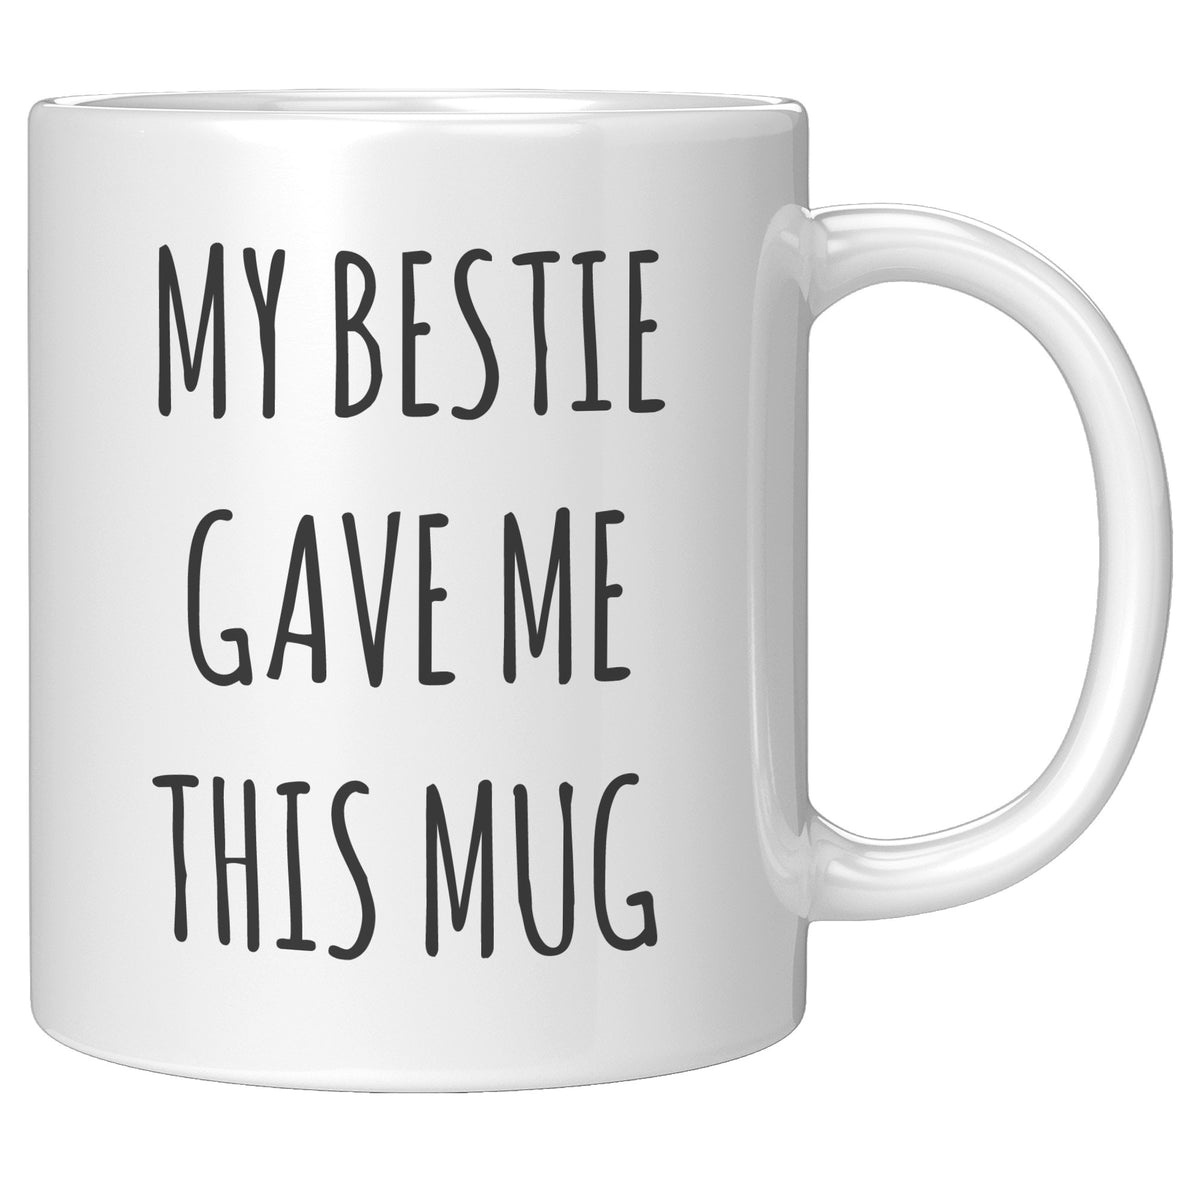 Bestie Mug - My Bestie Gave Me This Mug